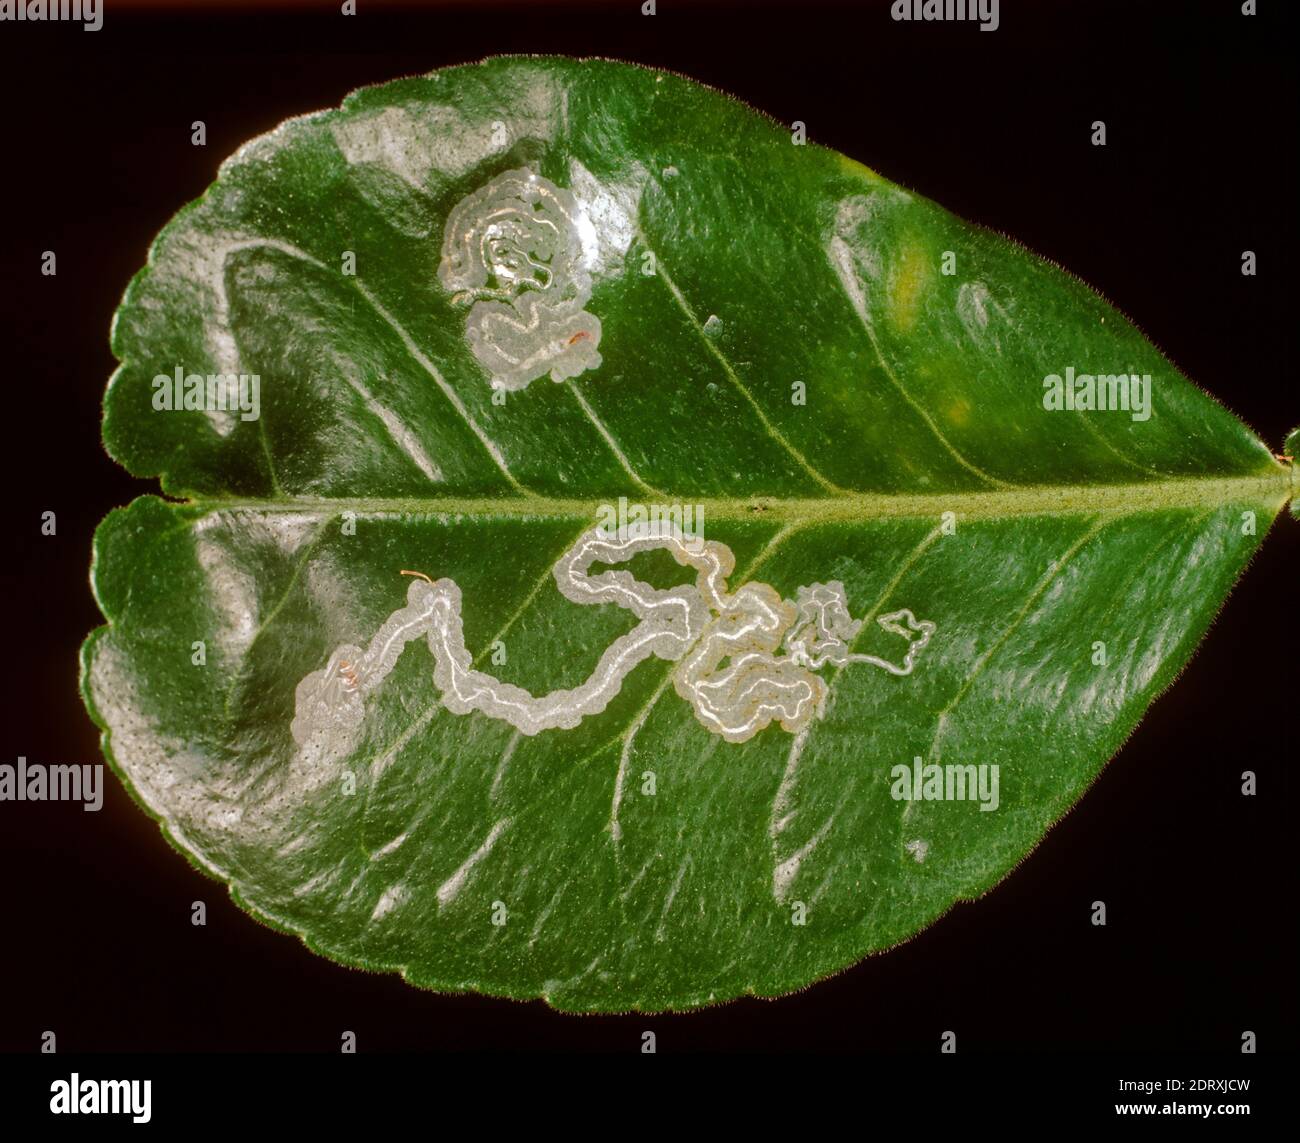 Citrus leafminer (Phyllocnistis citrella) pest  leaf mines in a pummelo (Citrus maxima) leaf, Thailand Stock Photo